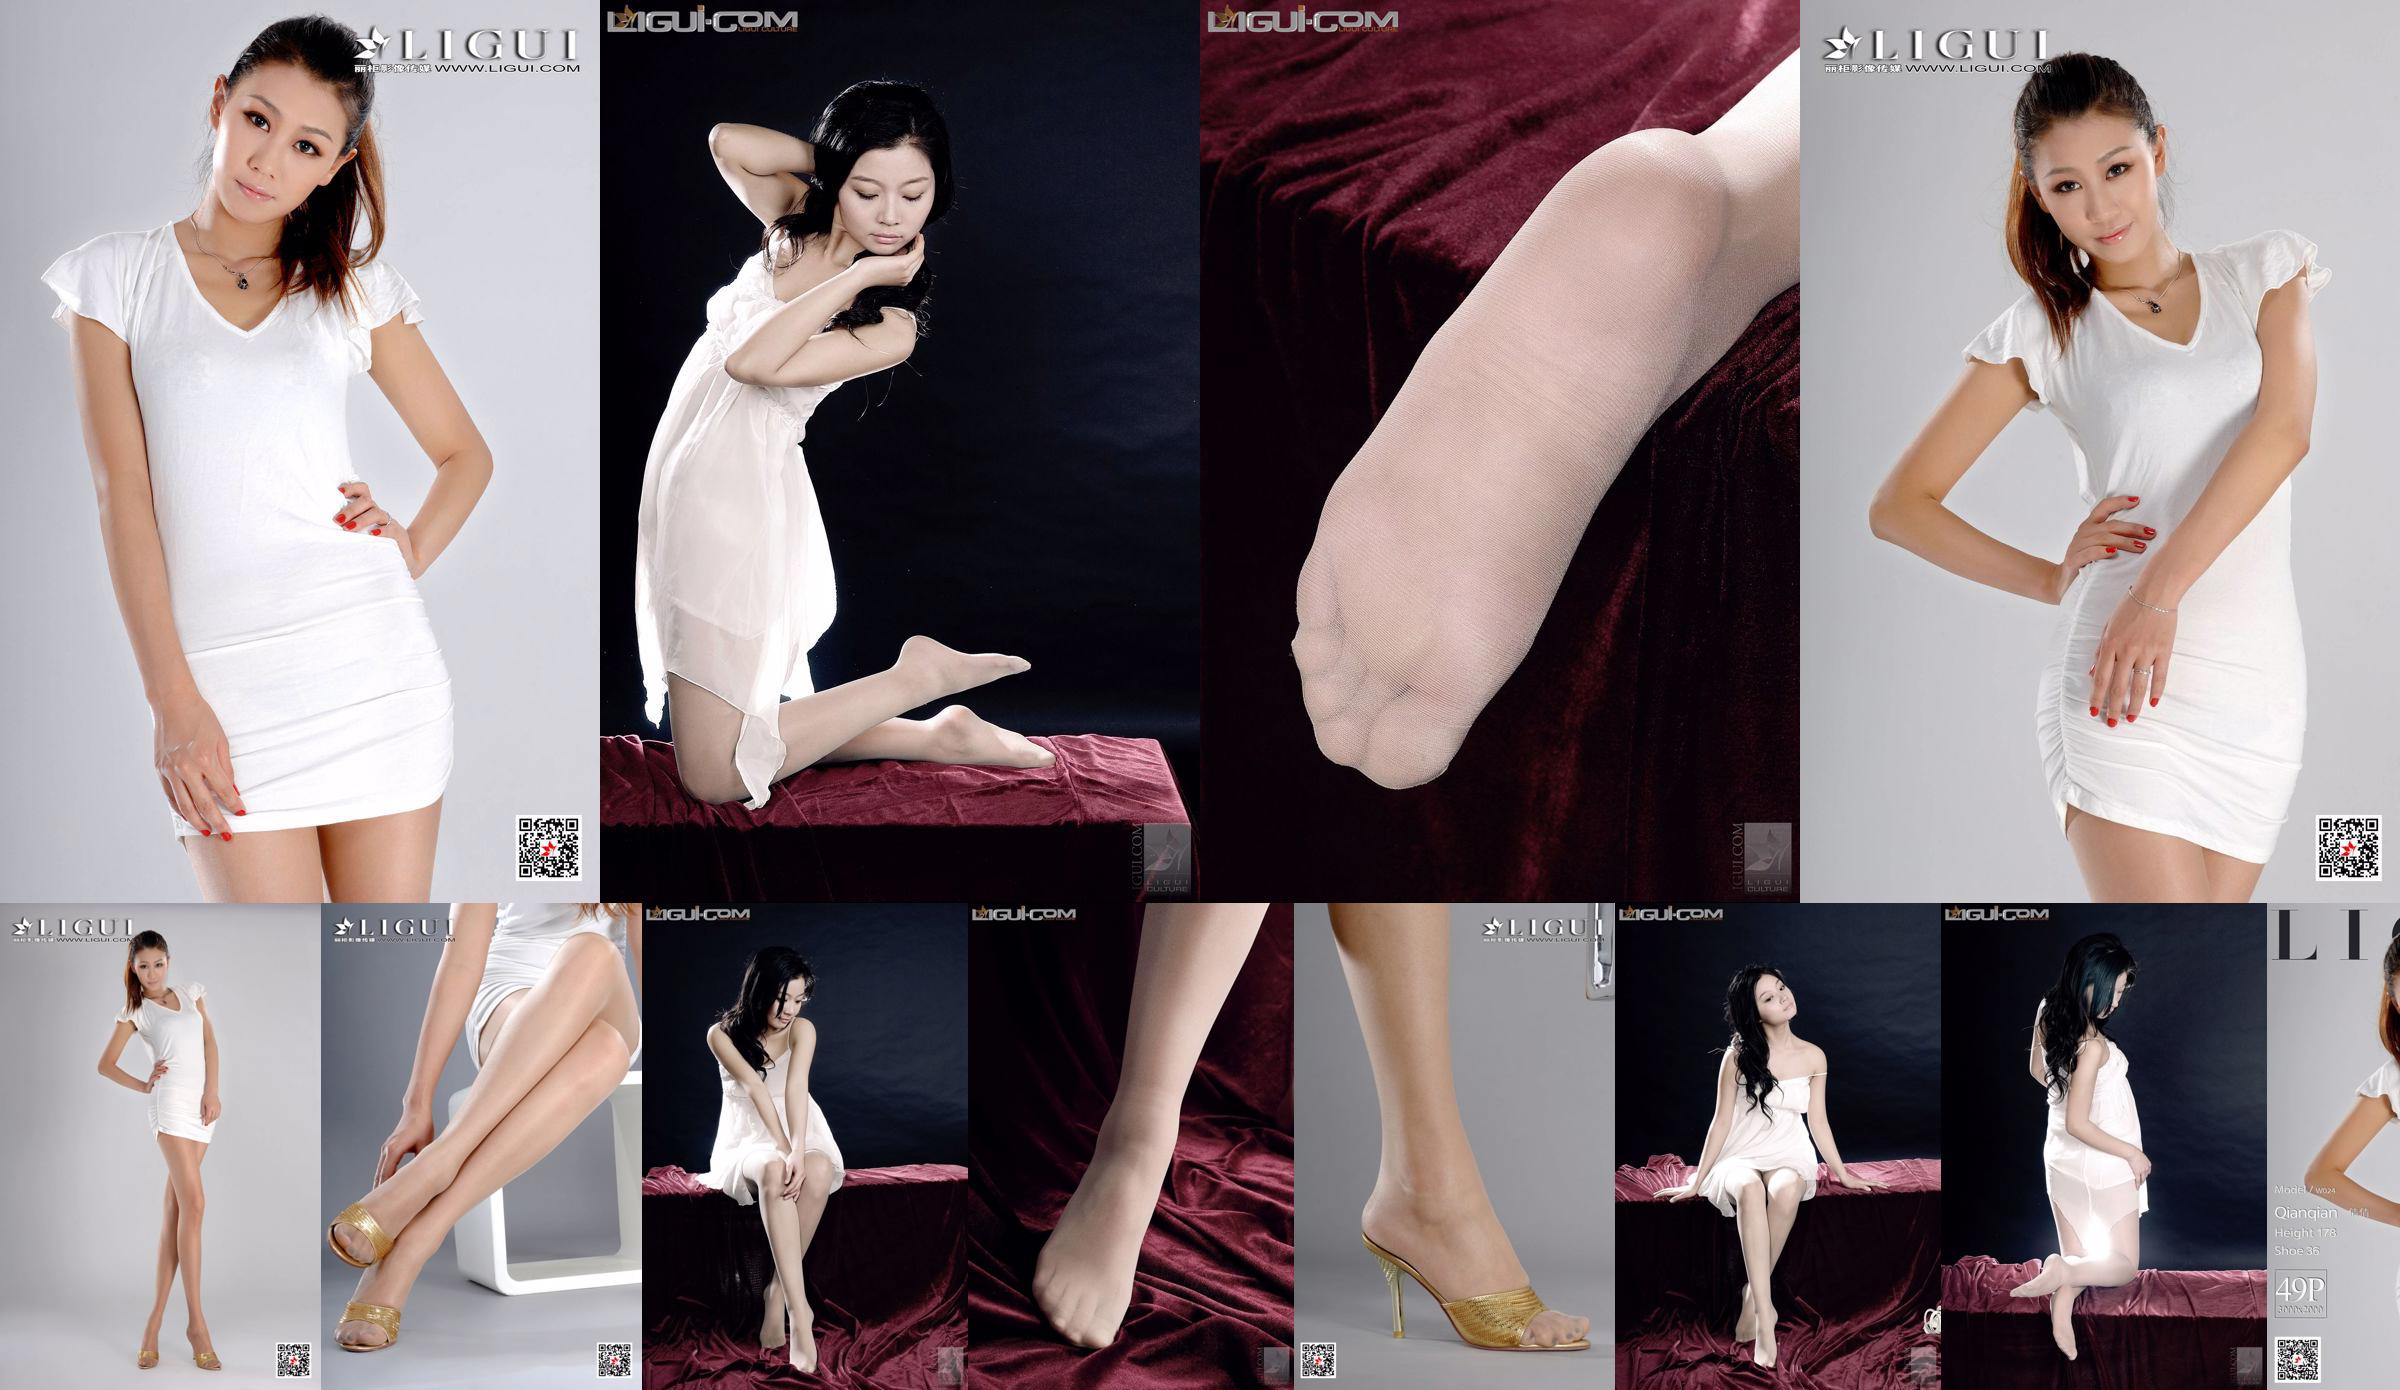 Model Qianqian "Großes Mädchen mit langen Beinen" [LIGUI] Network Beauty No.6a9fc5 Seite 1